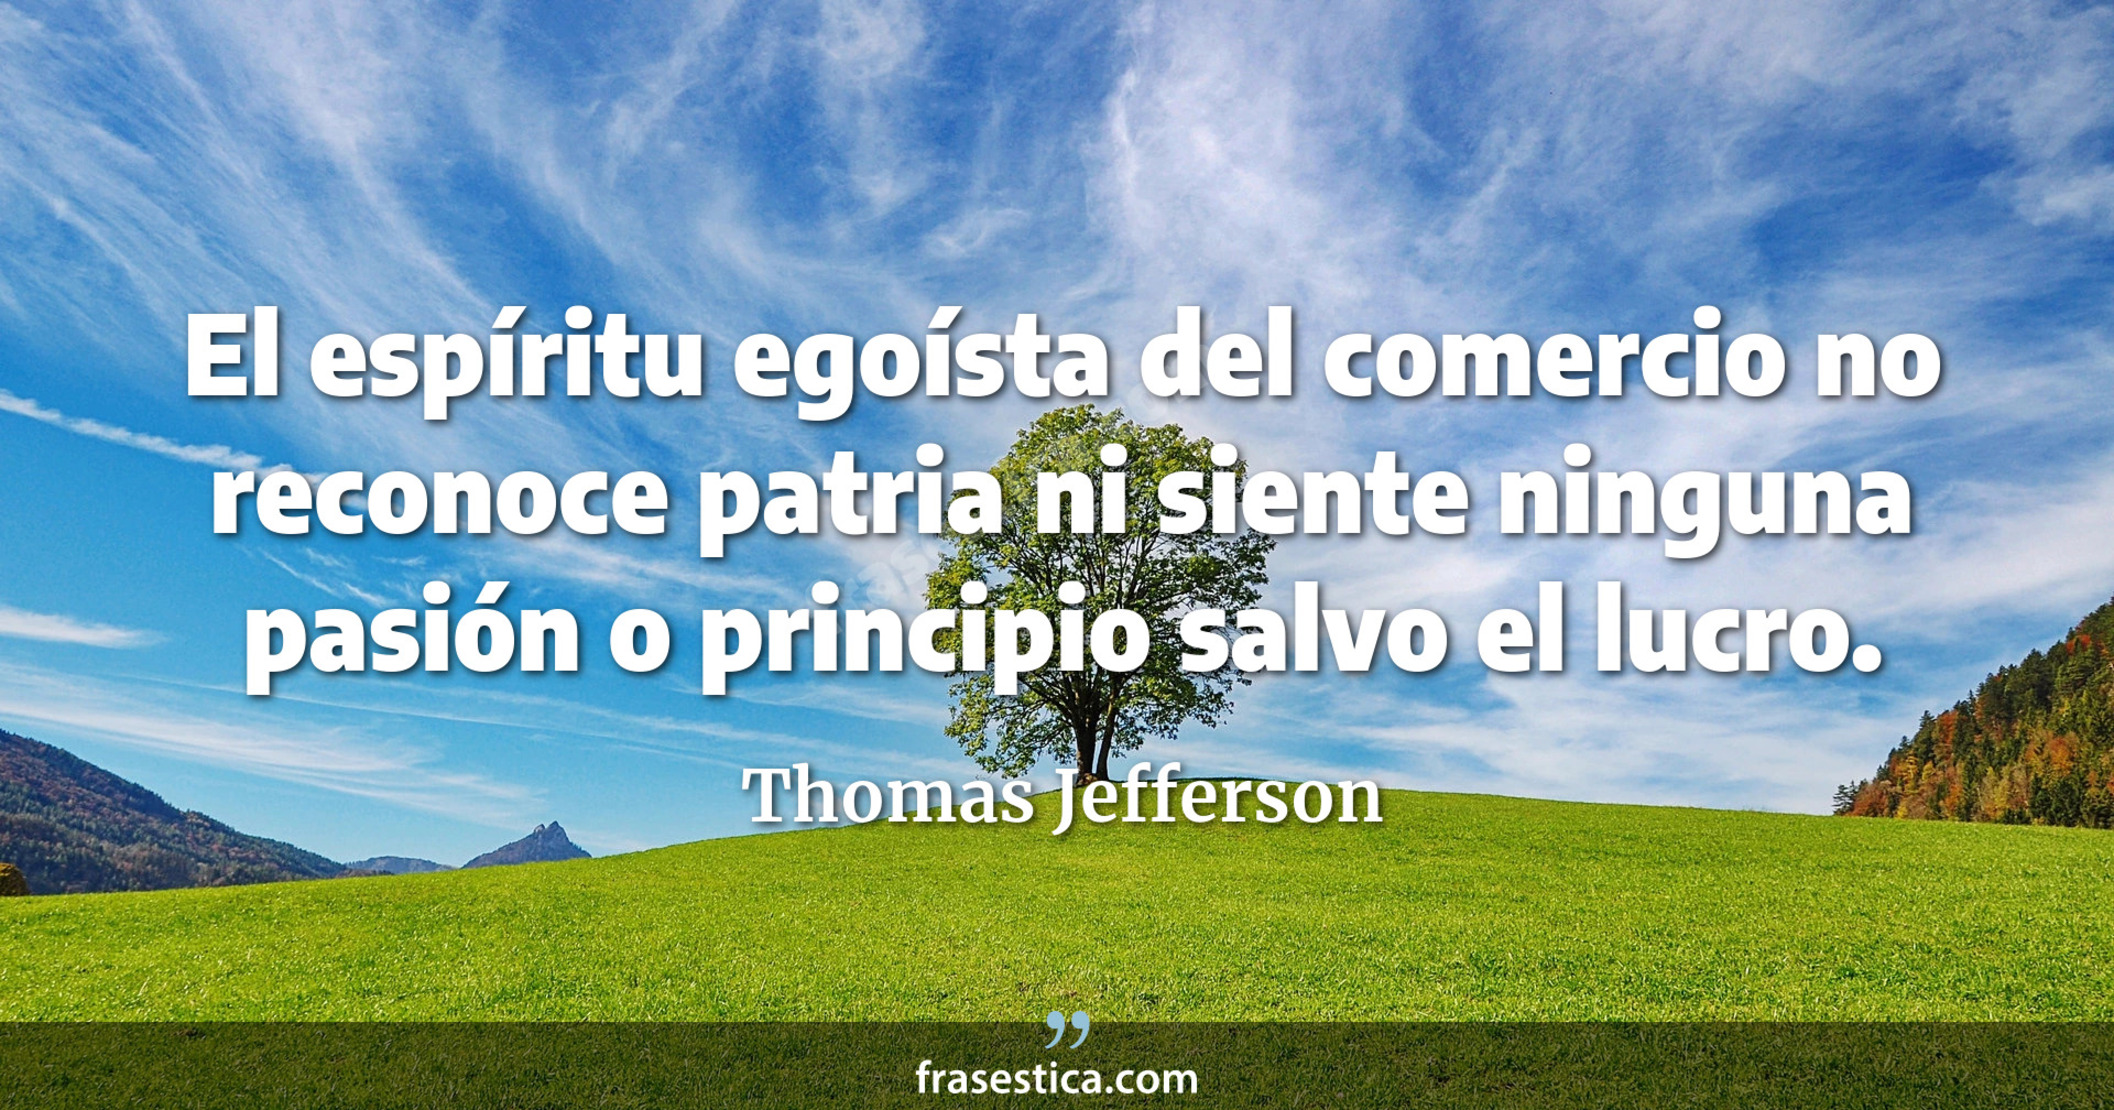 El espíritu egoísta del comercio no reconoce patria ni siente ninguna pasión o principio salvo el lucro. - Thomas Jefferson